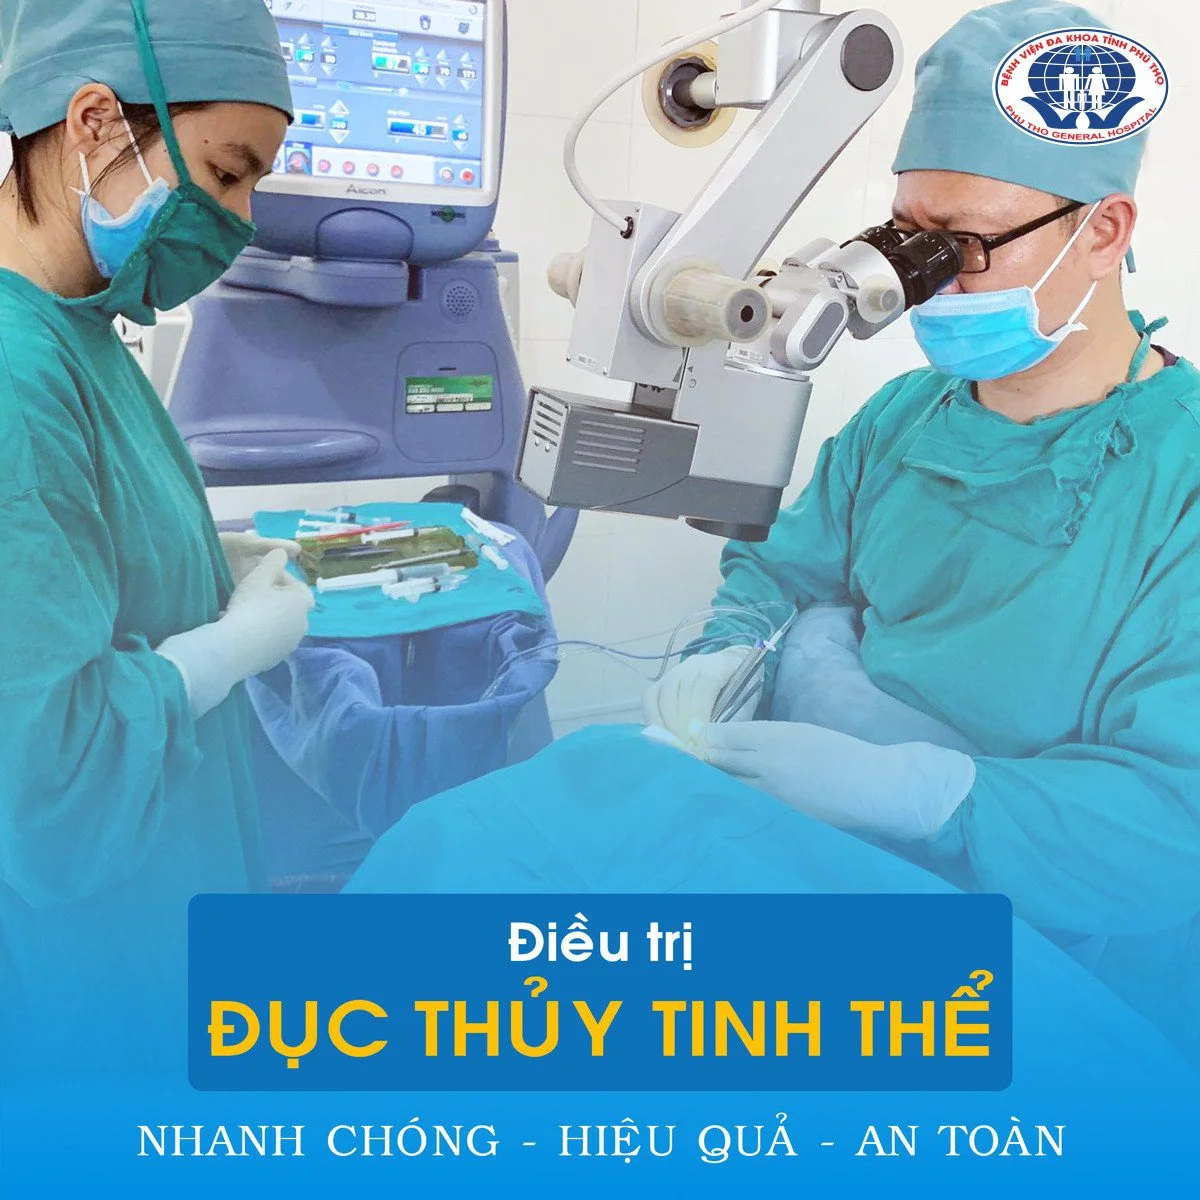 Bệnh viện đa khoa tỉnh Phú Thọ - địa chỉ uy tín hàng đầu điều trị bệnh đục thủy tinh thể